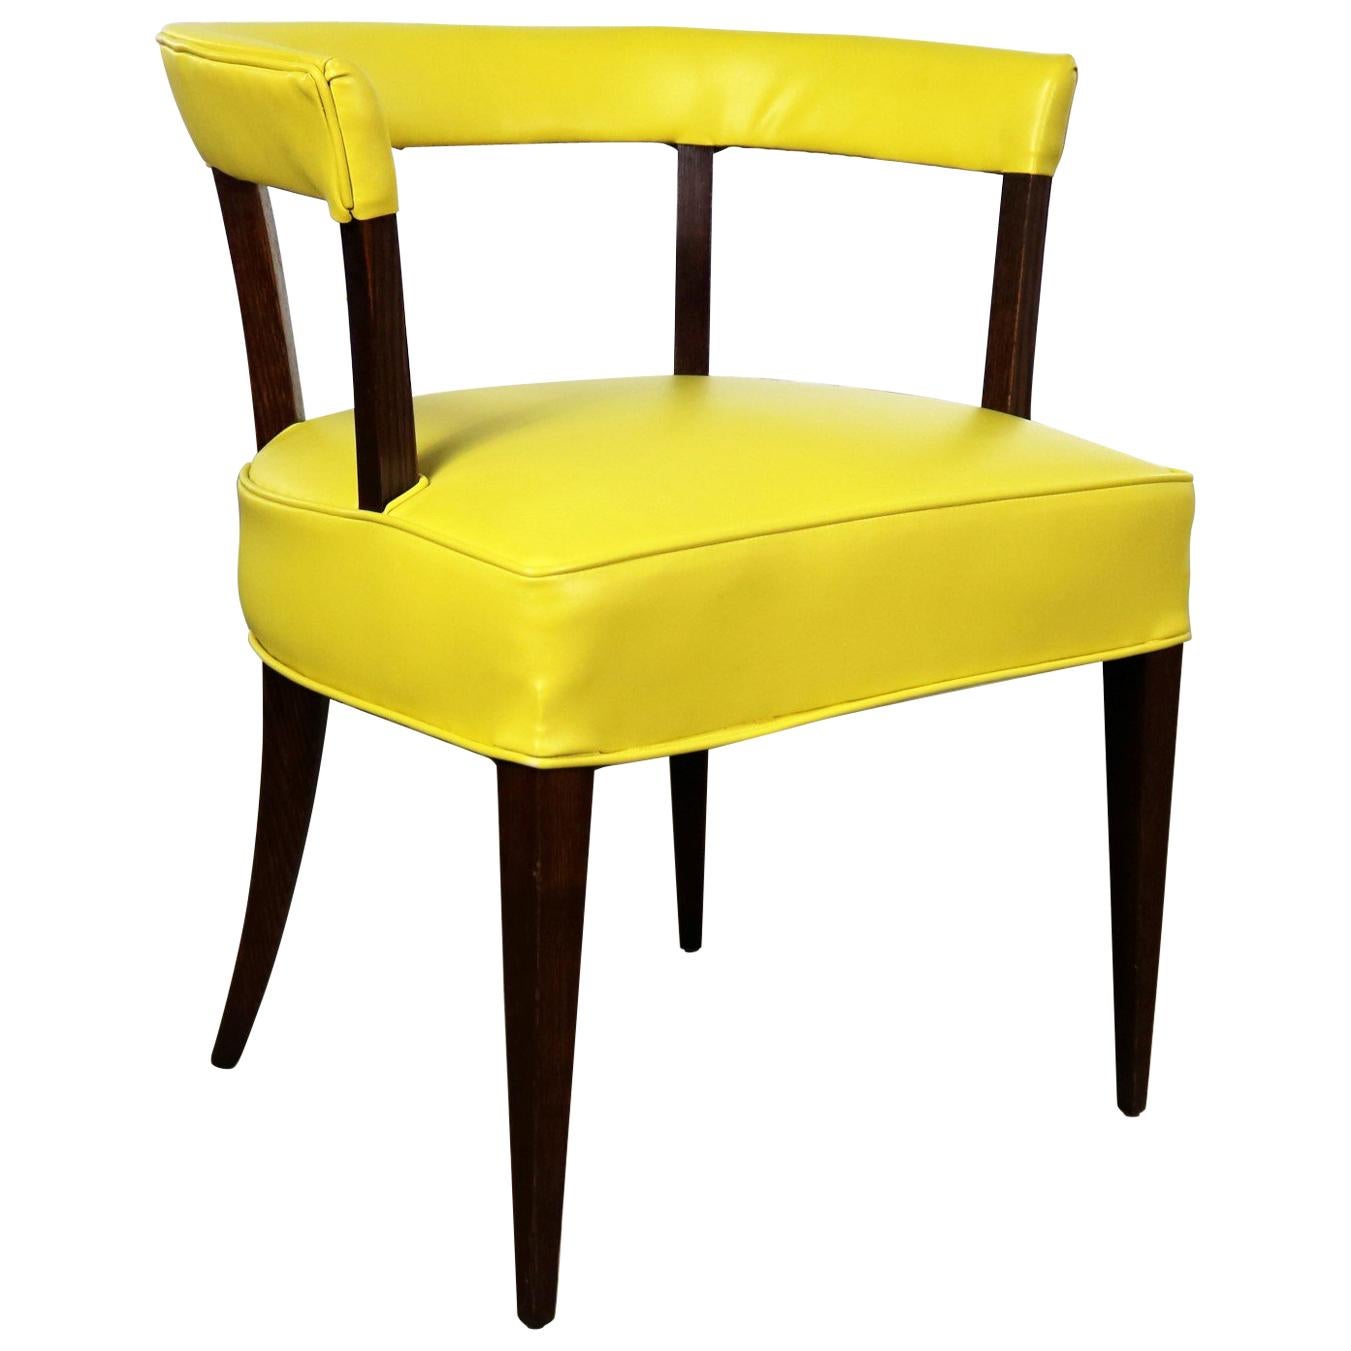 Mid-Century Modern Beistellstuhl aus gelbem Vinyl und Eichenholz mit Fassrückenlehne